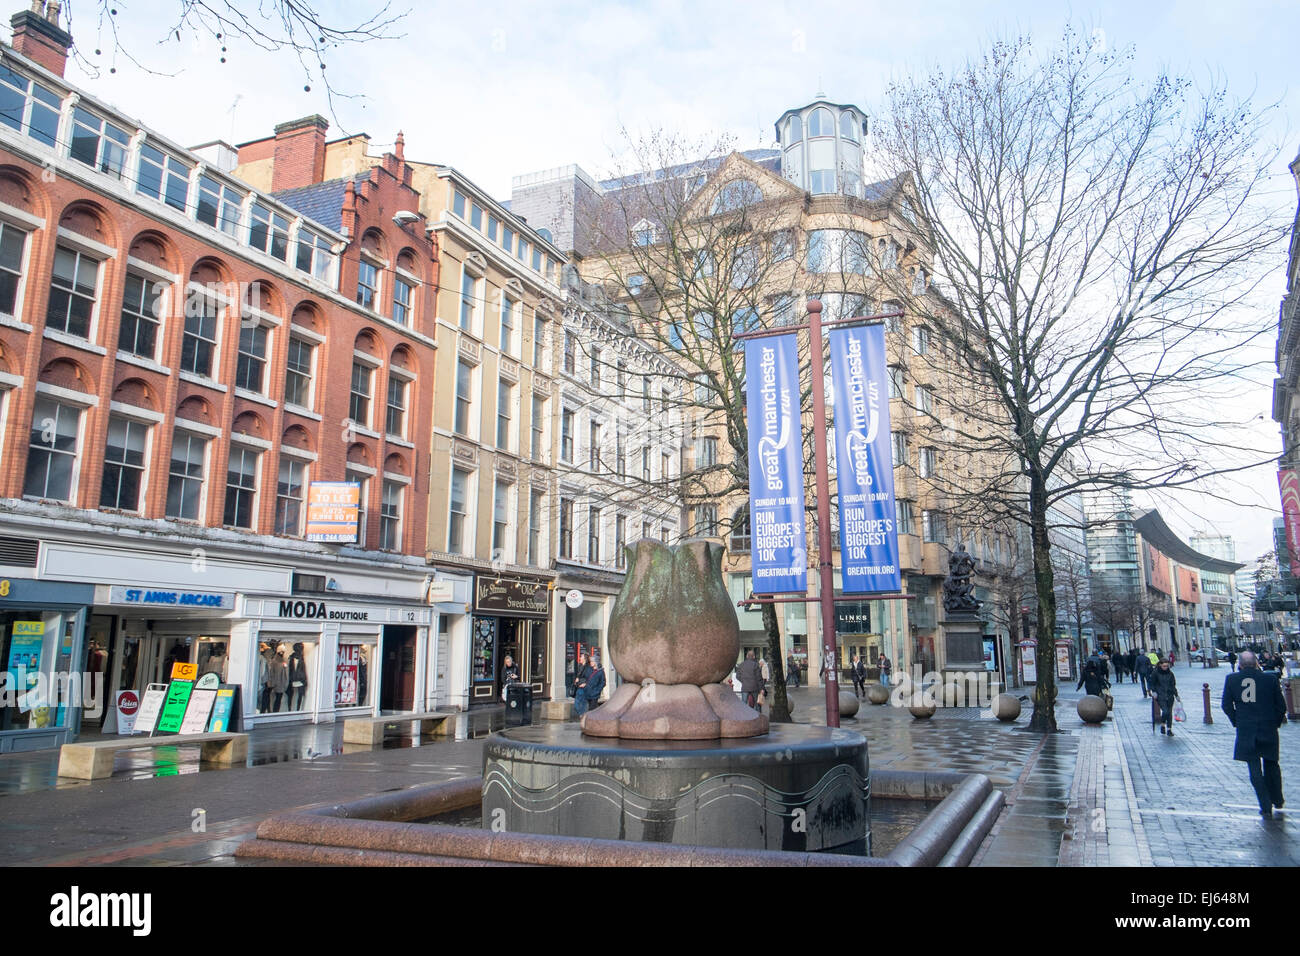 St Anns Square nel centro di Manchester, nel nord dell'Inghilterra, in Gran Bretagna Foto Stock